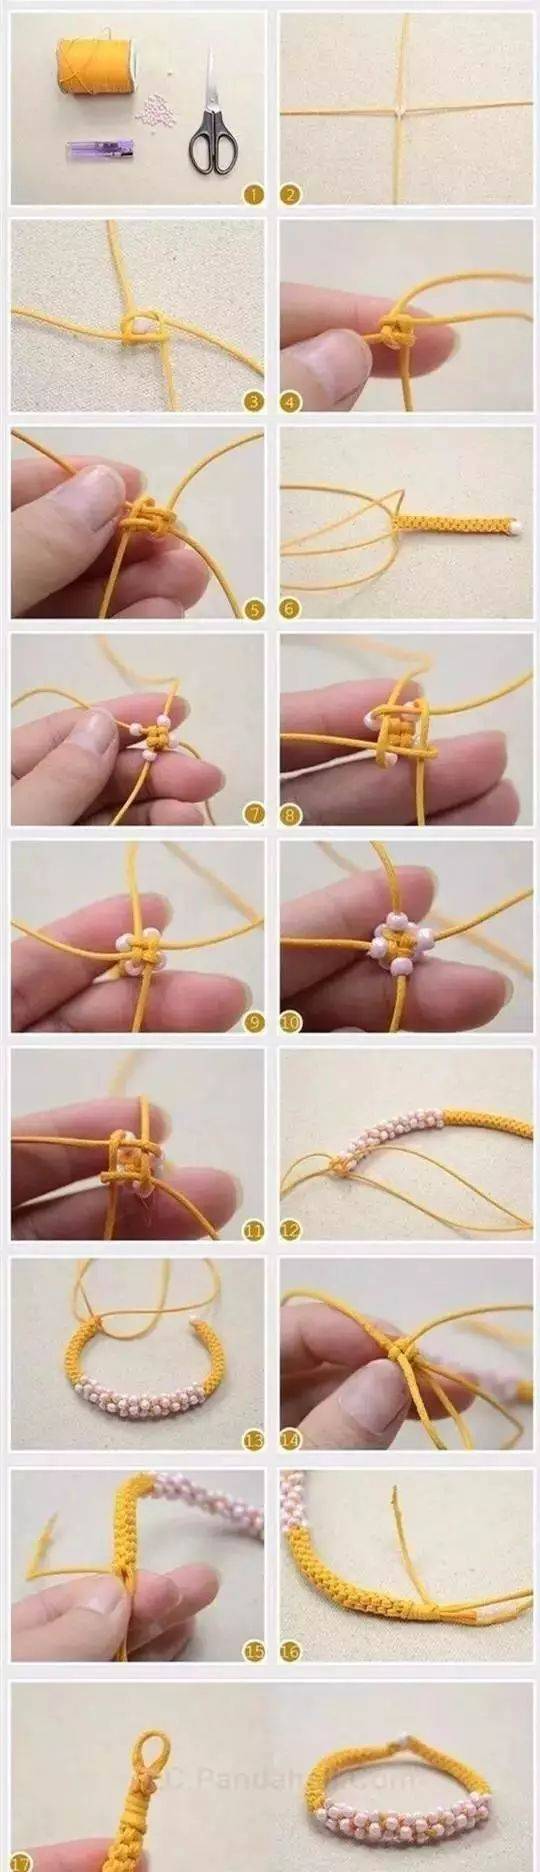 必学的毛线手工编织手链教程上详细图解